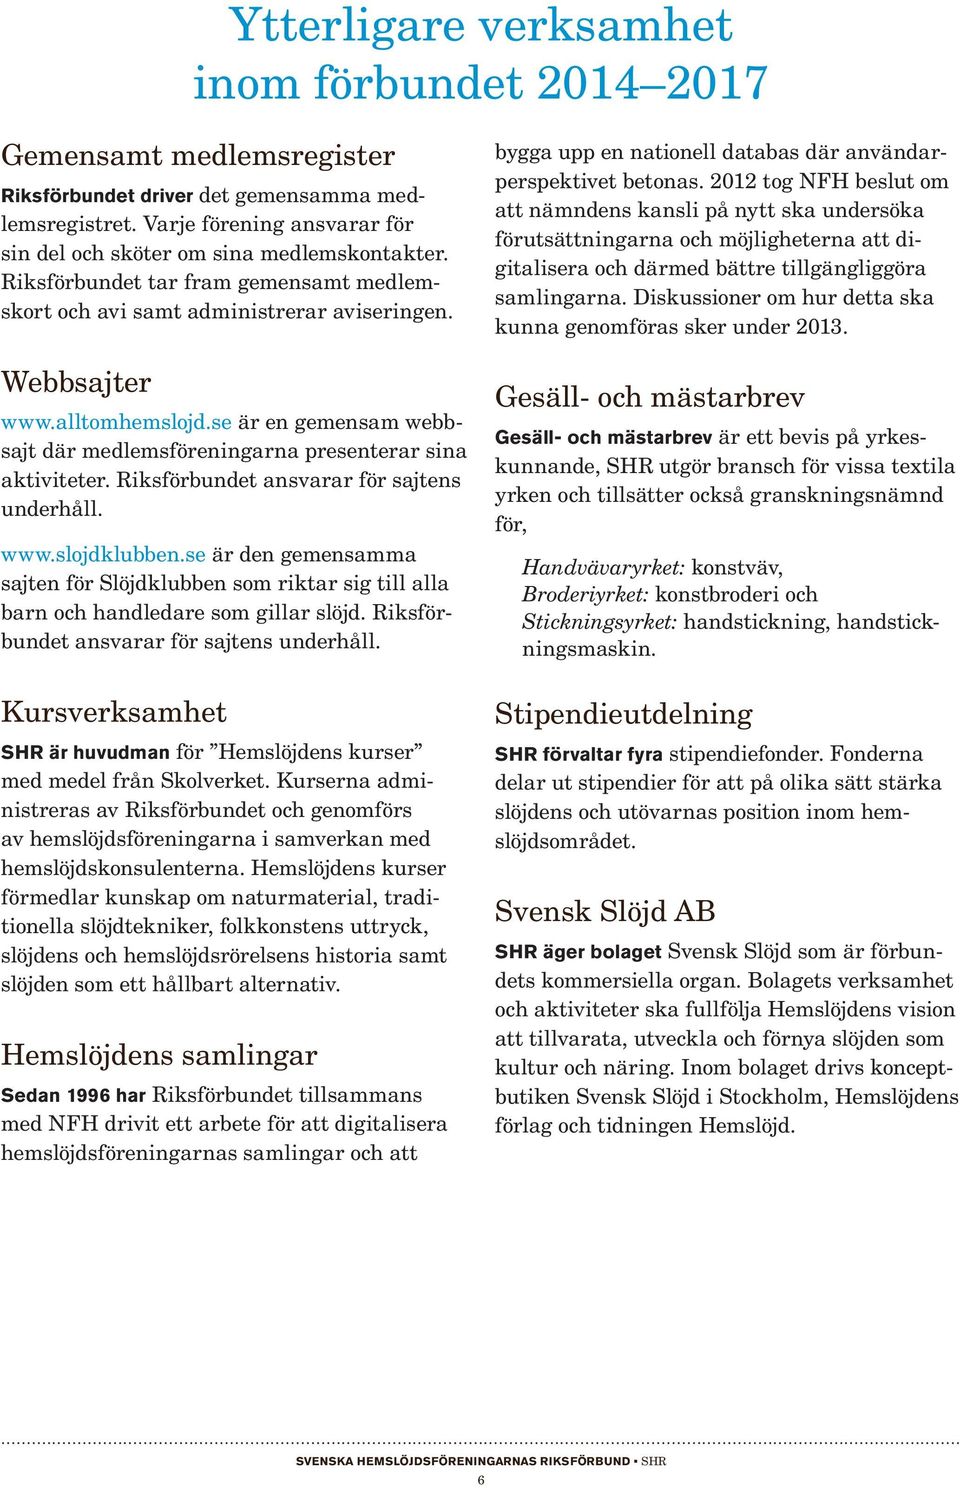 Rikset ansvarar för sajtens underhåll. www.slojdklubben.se är den gemensamma sajten för Slöjdklubben som riktar sig till alla barn och handledare som gillar slöjd.